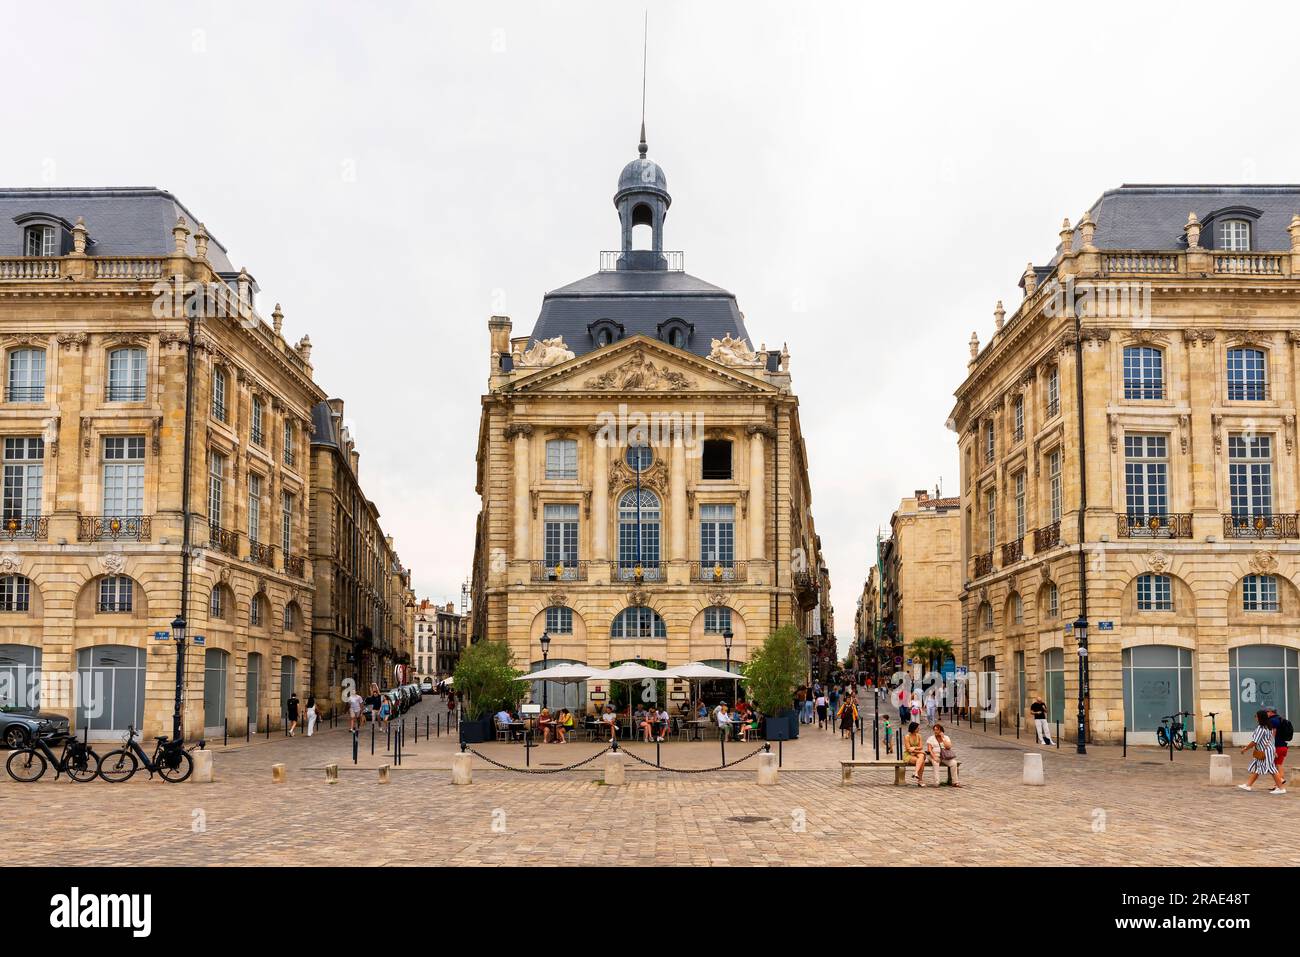 Place de la Bourse, Bordeaux, Aquitaine region, France. Stock Photo